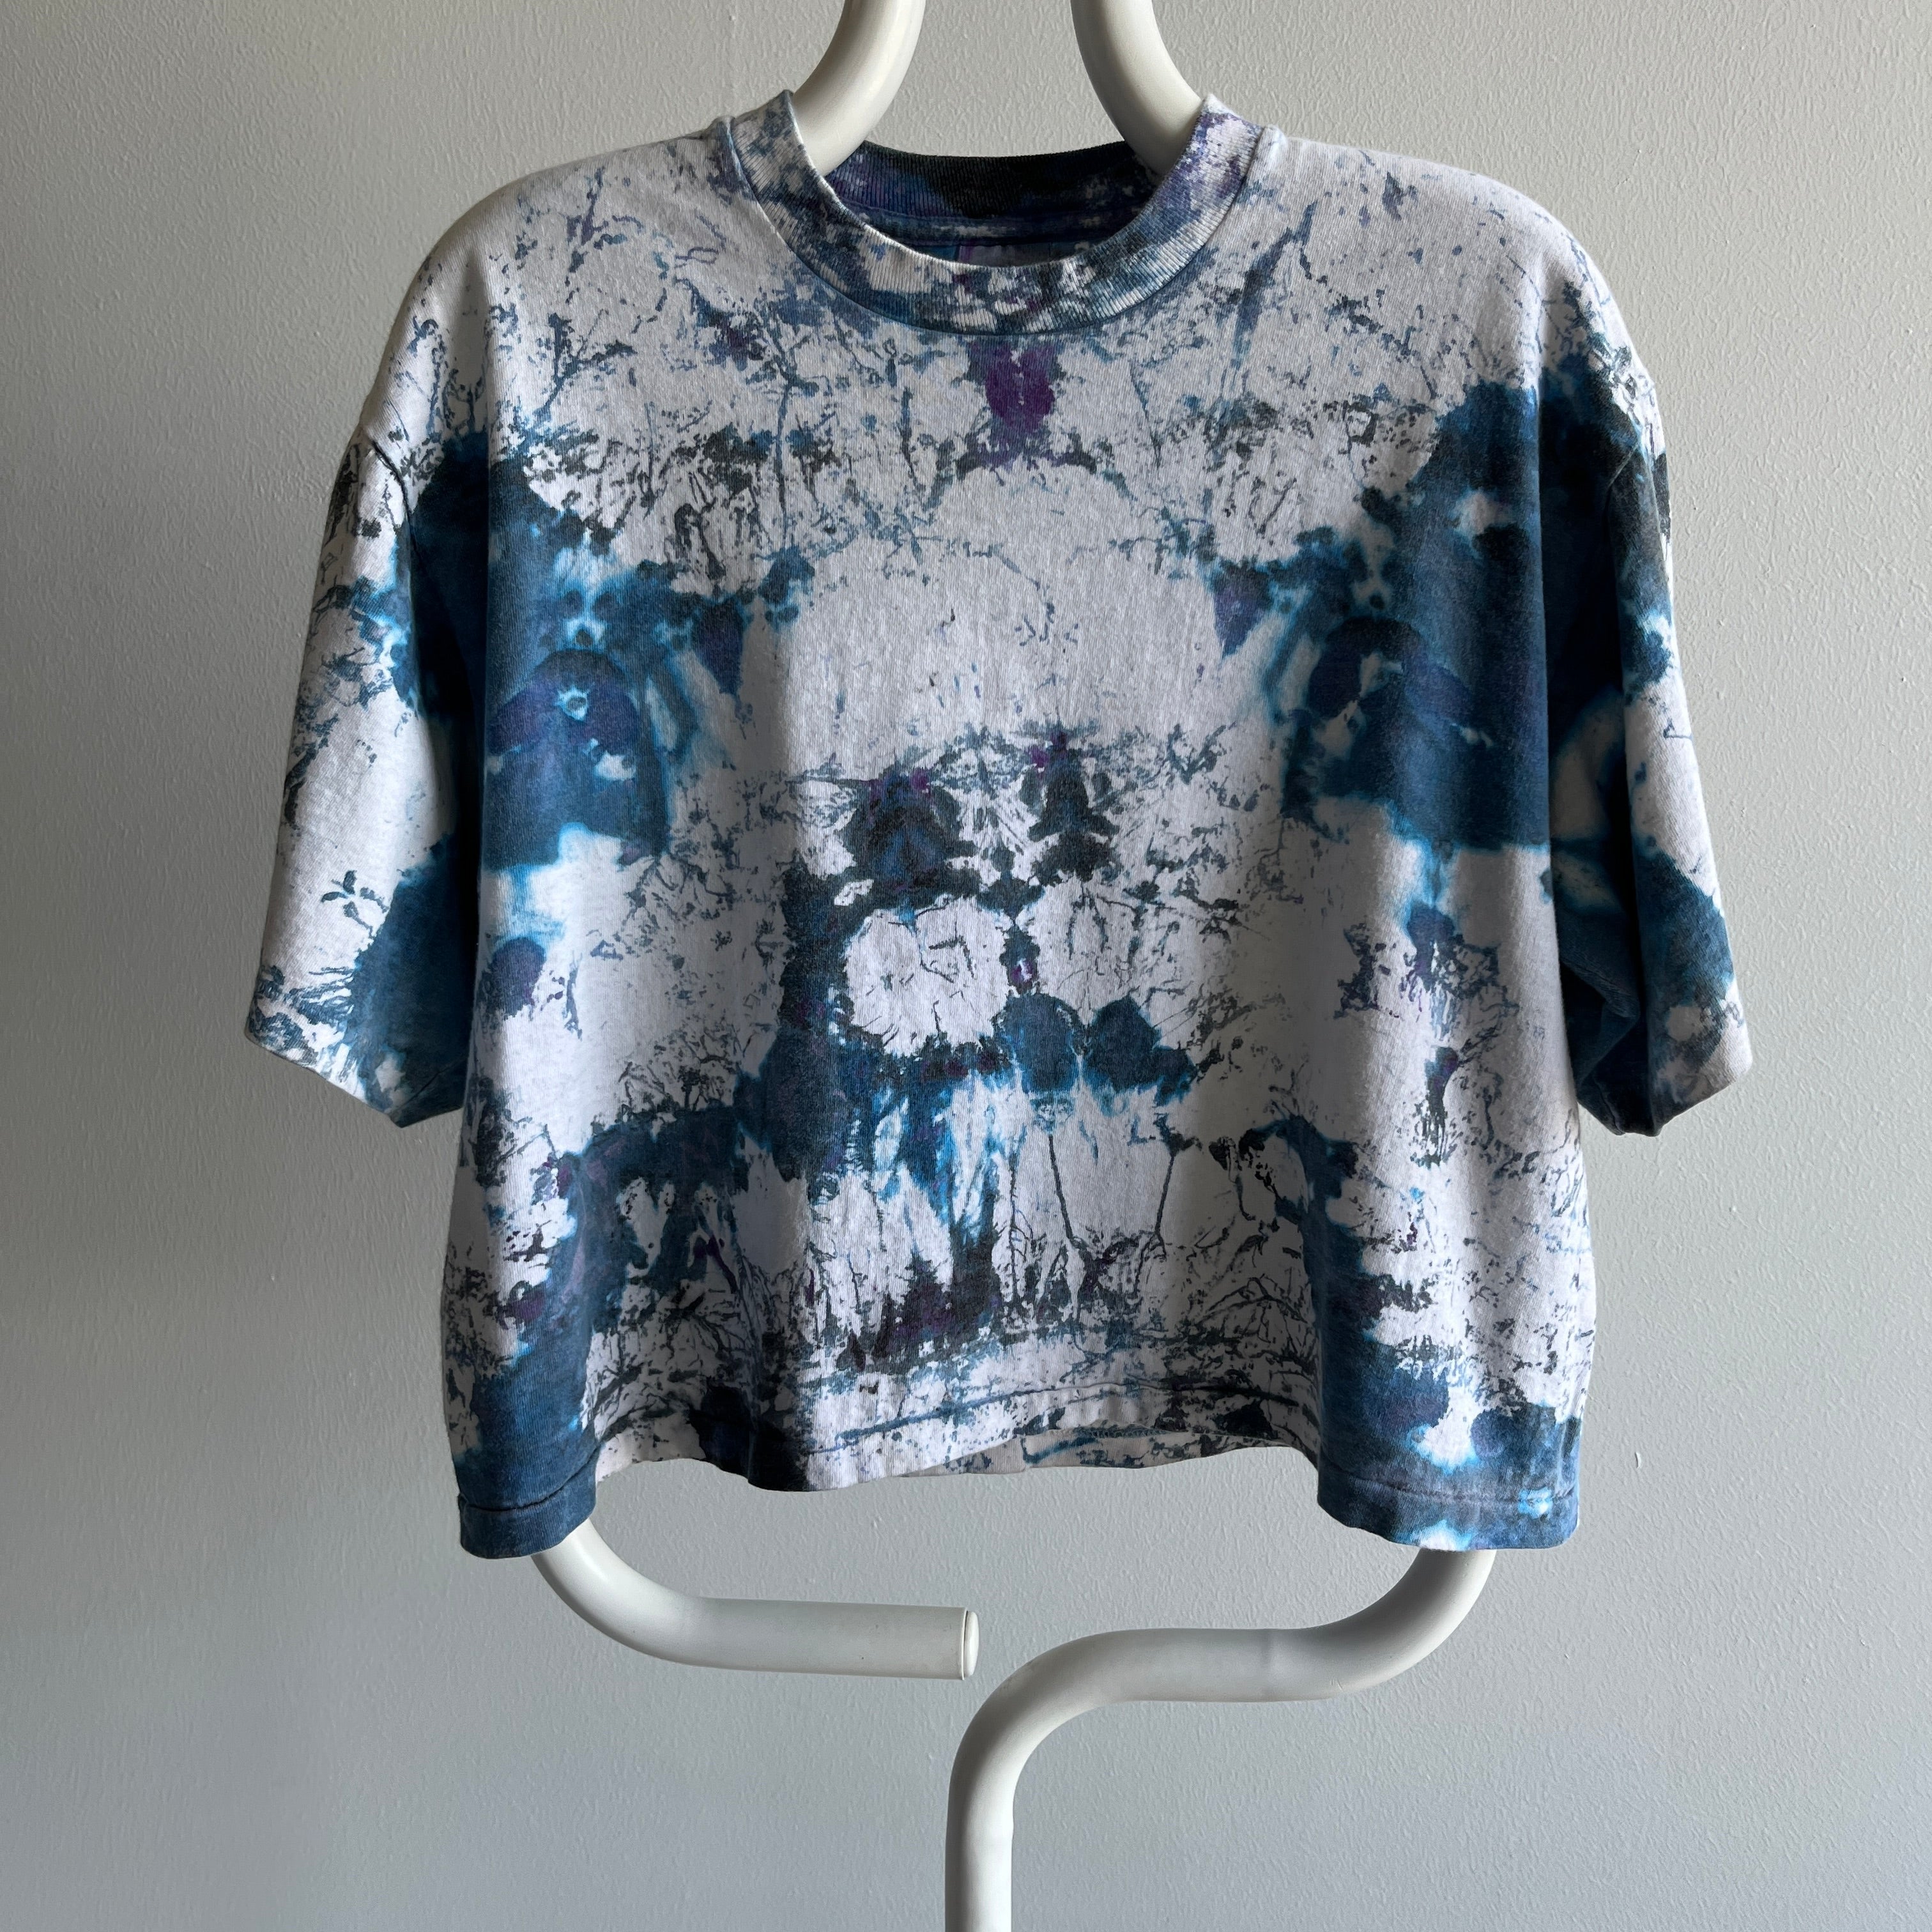 1980s Cropped Cool Tie Dye Cotton T-Shirt